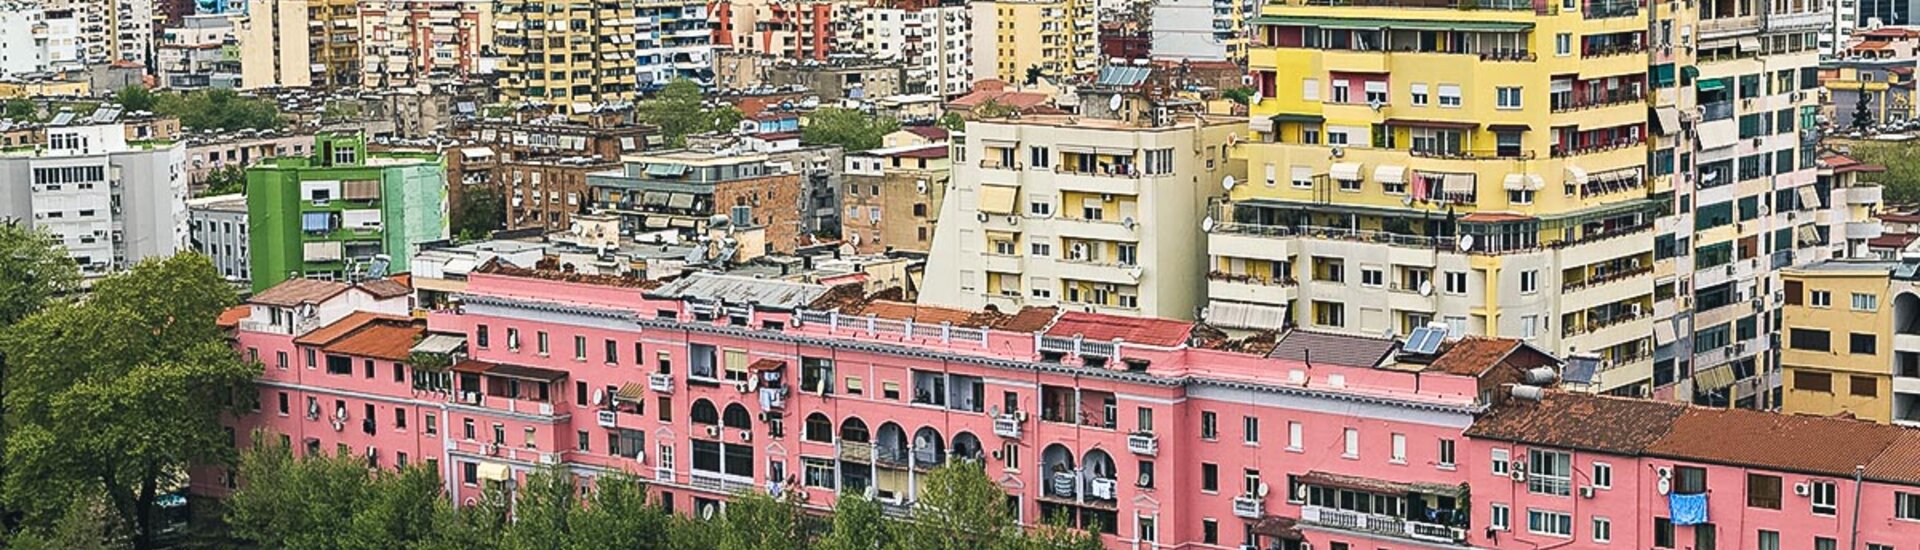 Wohngebäude von Tirana